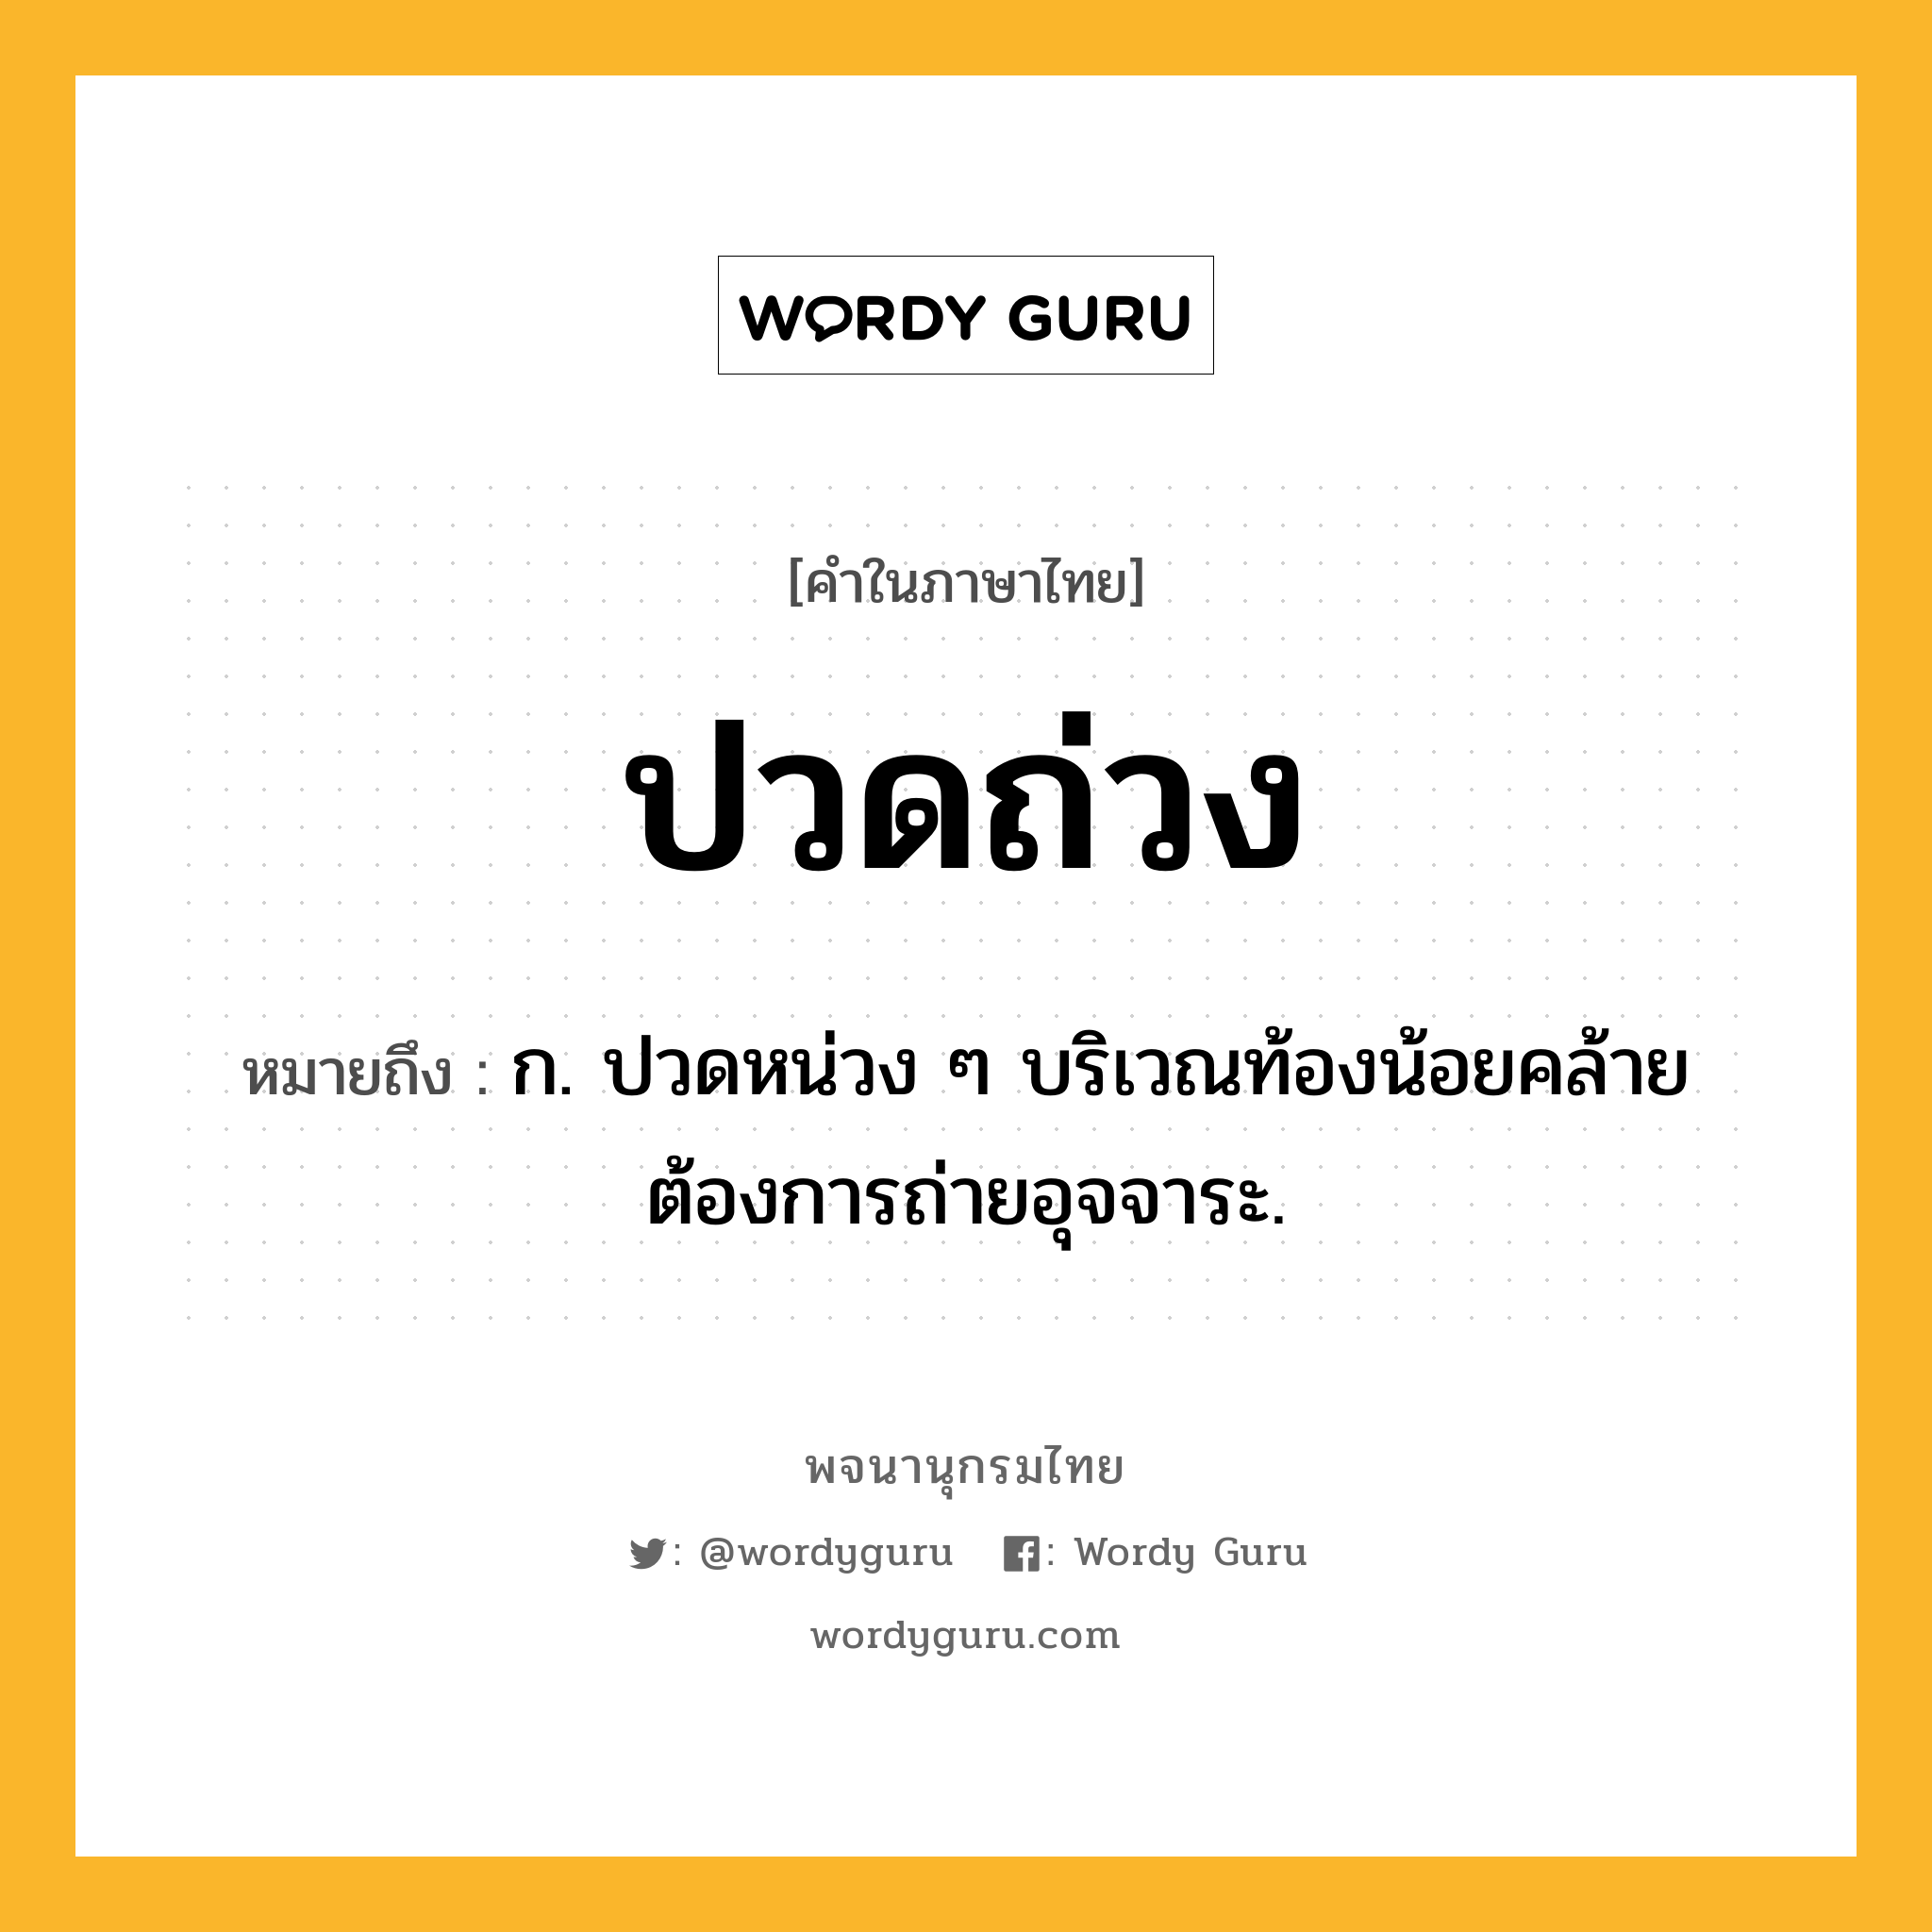 ปวดถ่วง หมายถึงอะไร?, คำในภาษาไทย ปวดถ่วง หมายถึง ก. ปวดหน่วง ๆ บริเวณท้องน้อยคล้ายต้องการถ่ายอุจจาระ.